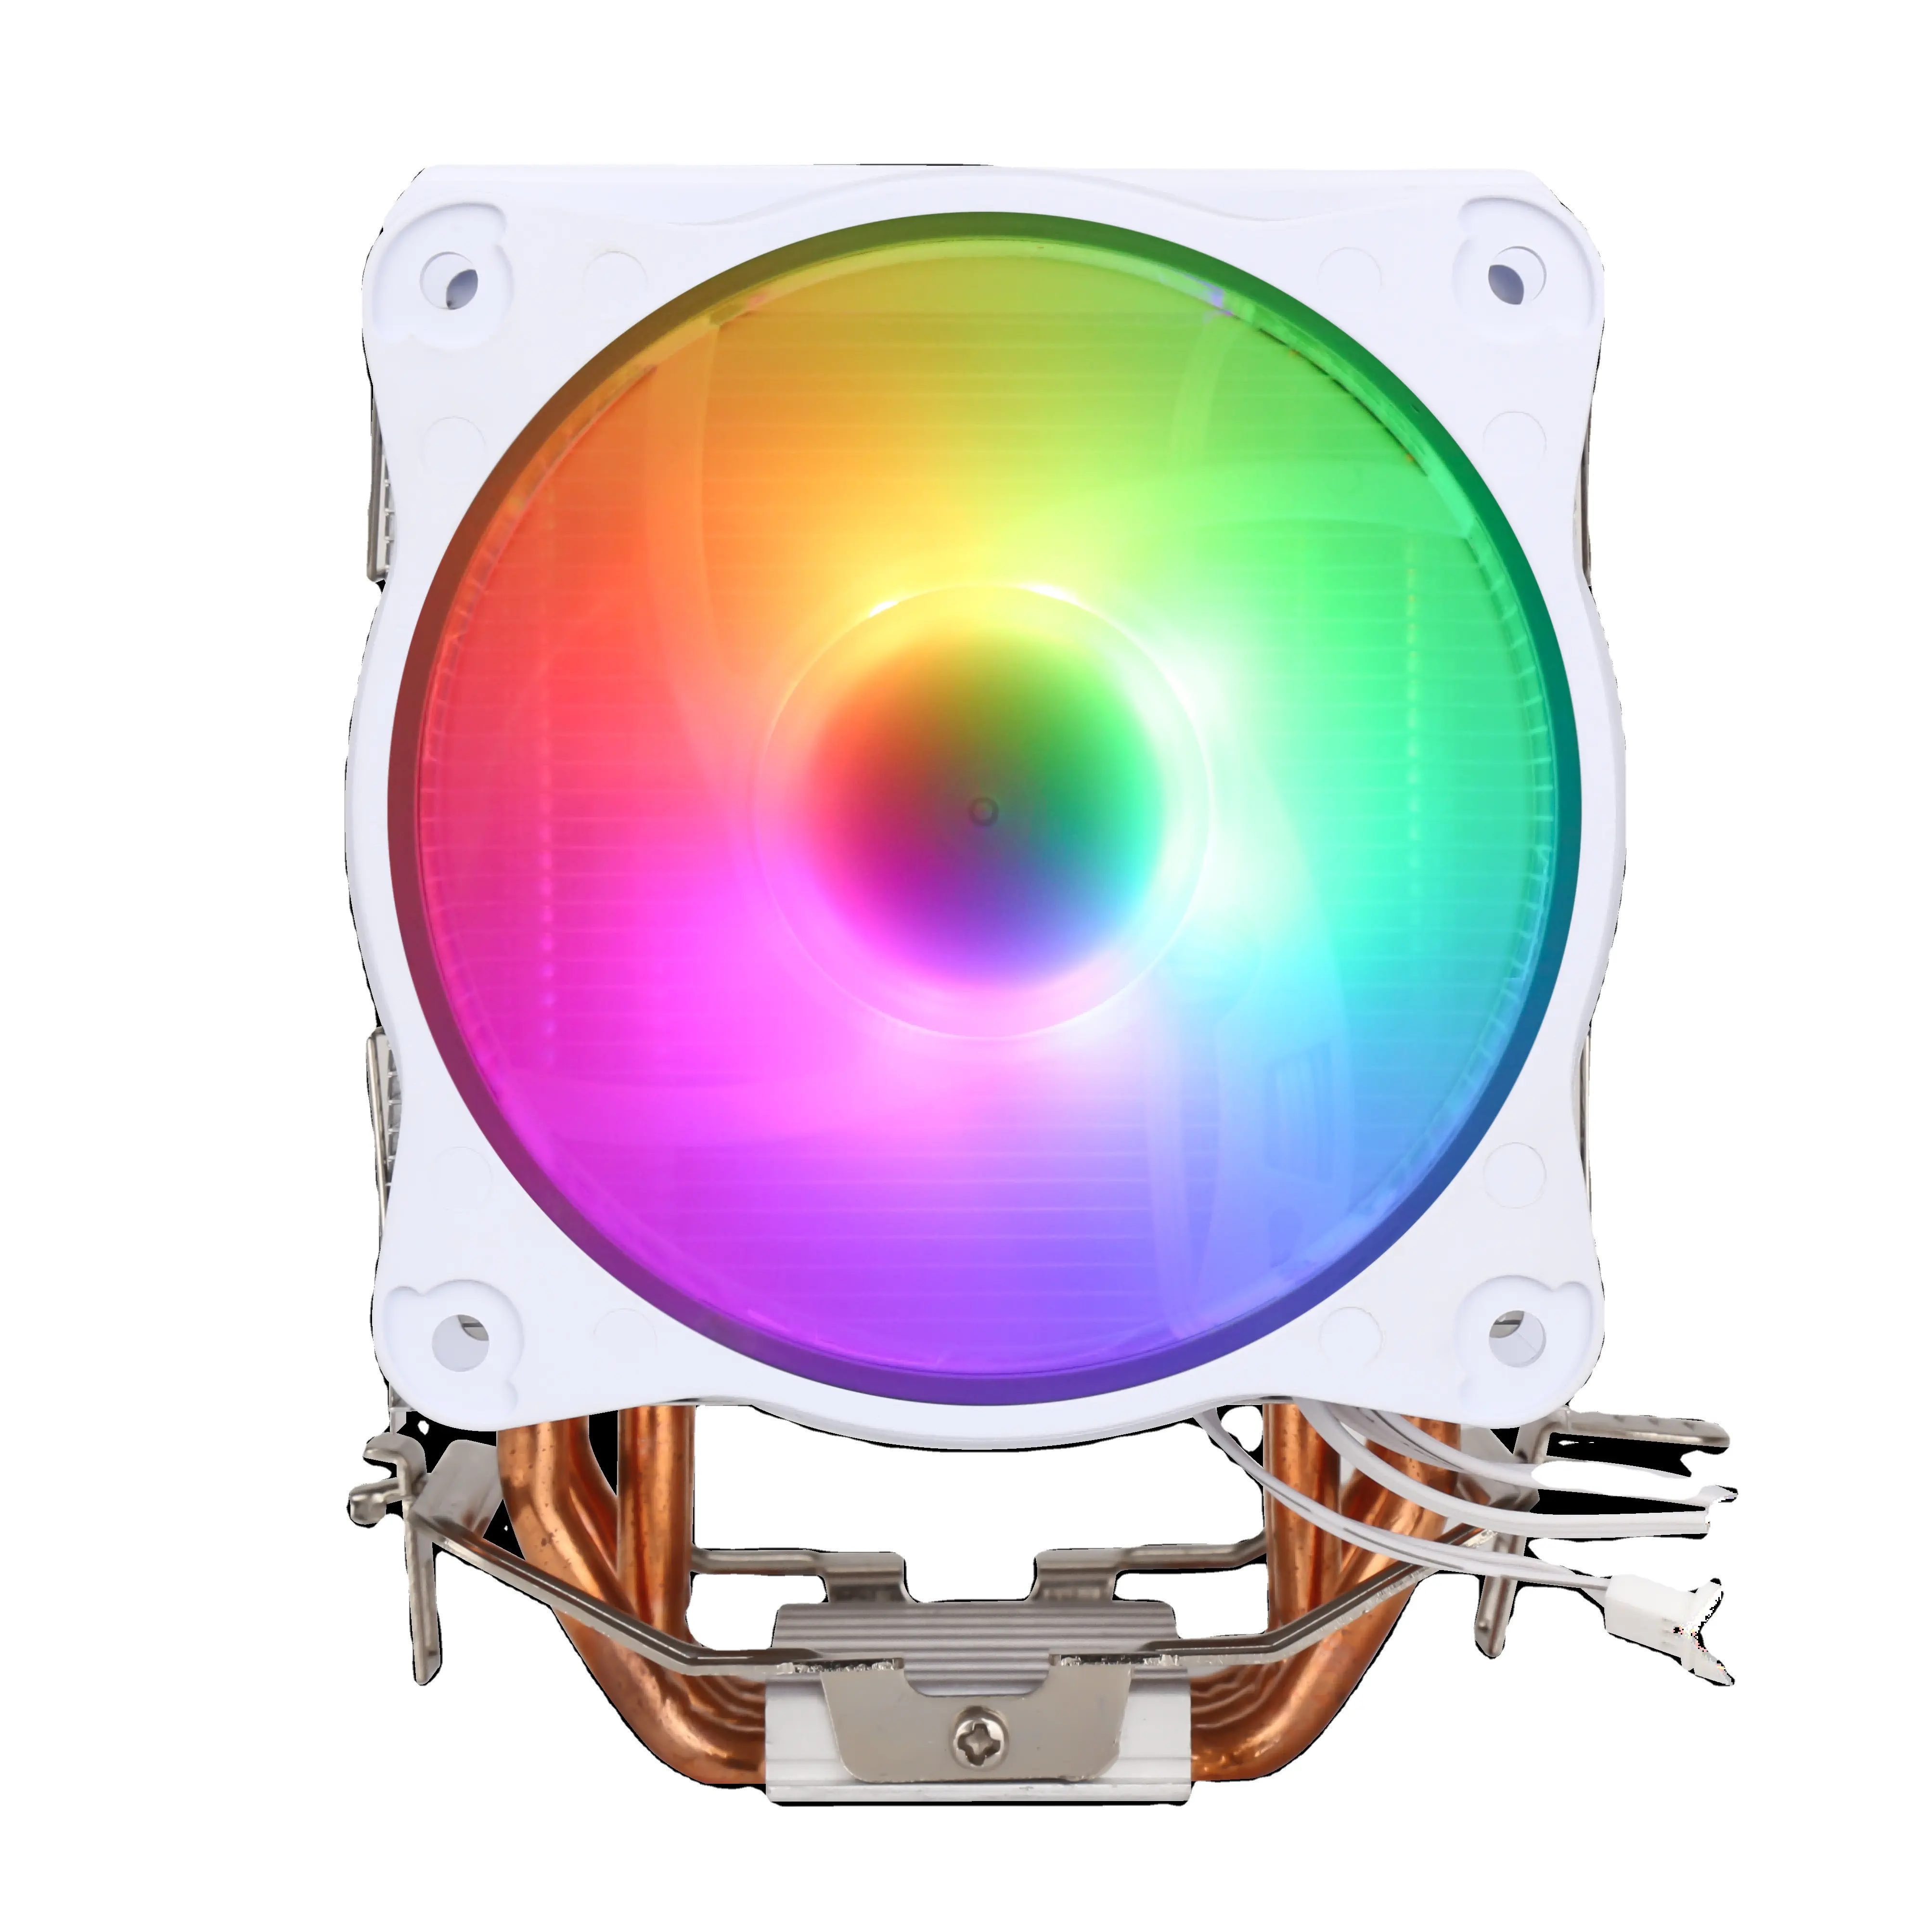 SAMA versand bereit 9cm Universal AMD INTEL Plattform kühler Prozessor Kühlung Kupfer PC CPU Luftkühlung Kühler CPU Lüfter Kühler